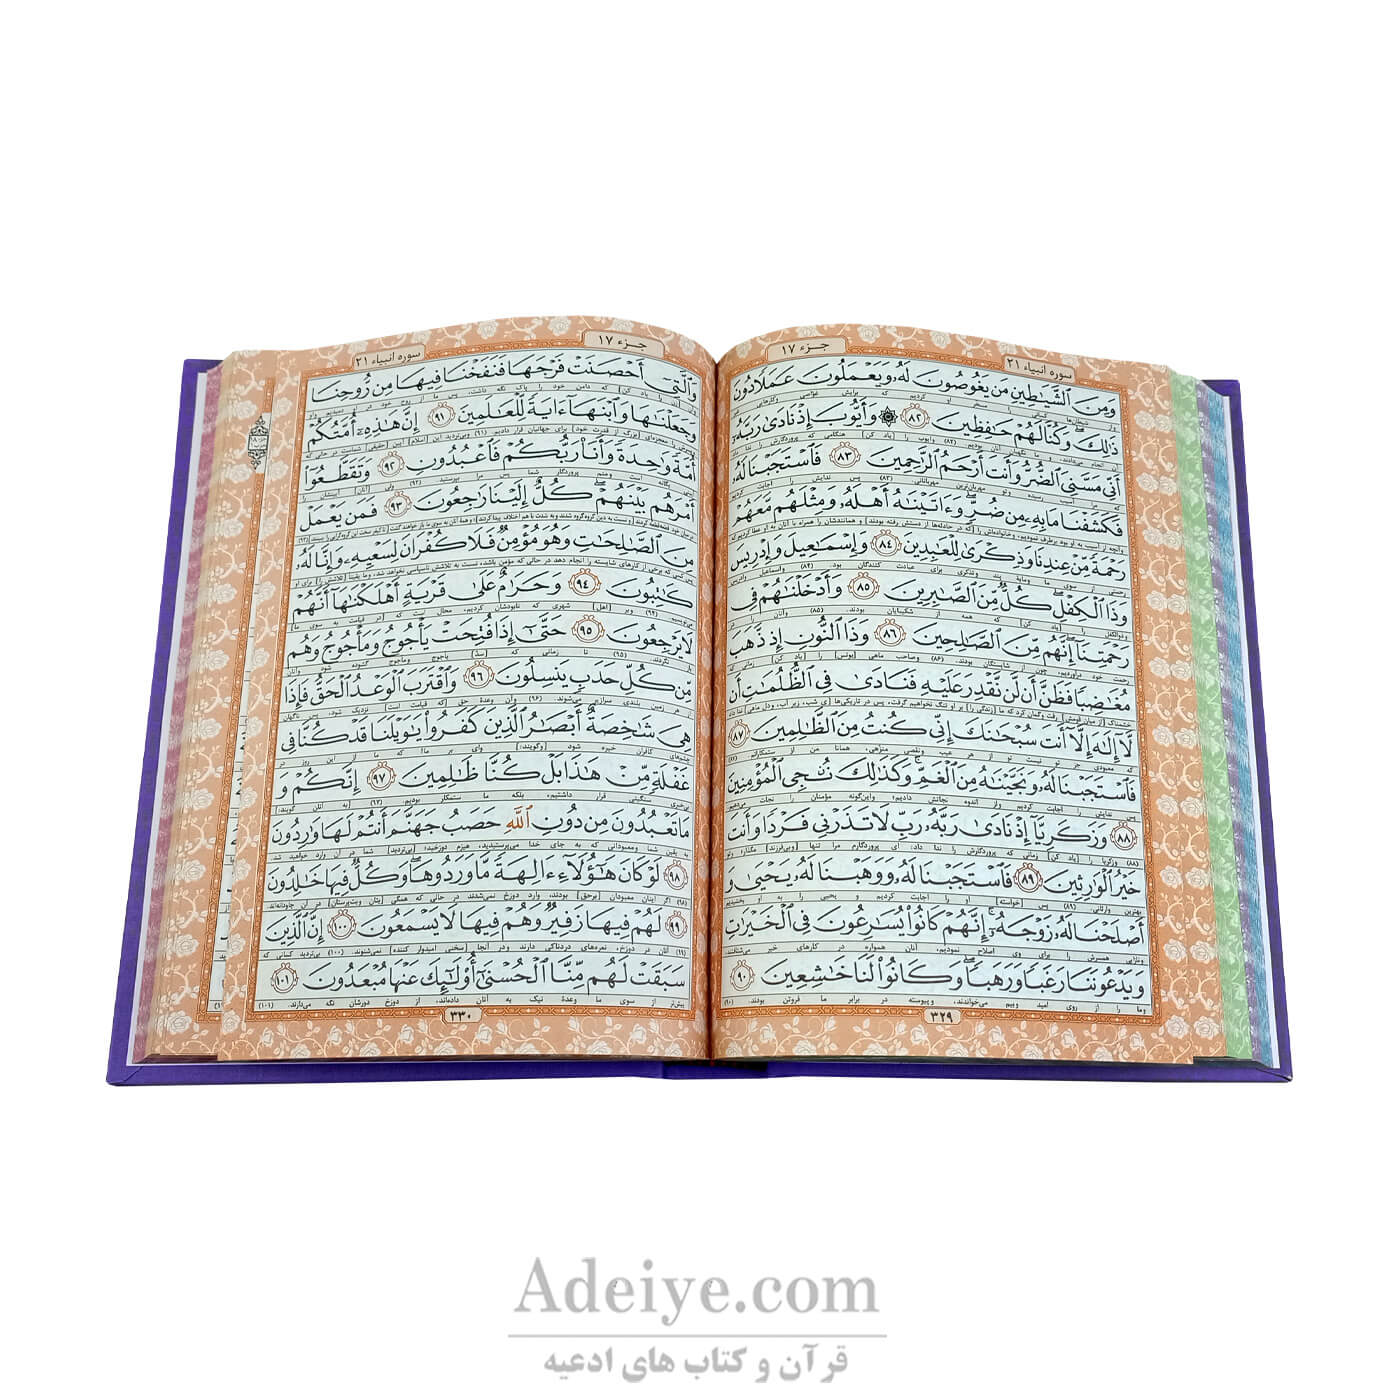 کتاب قرآن (وزیری، گالینگور، عثمان طه)-عکس متن4